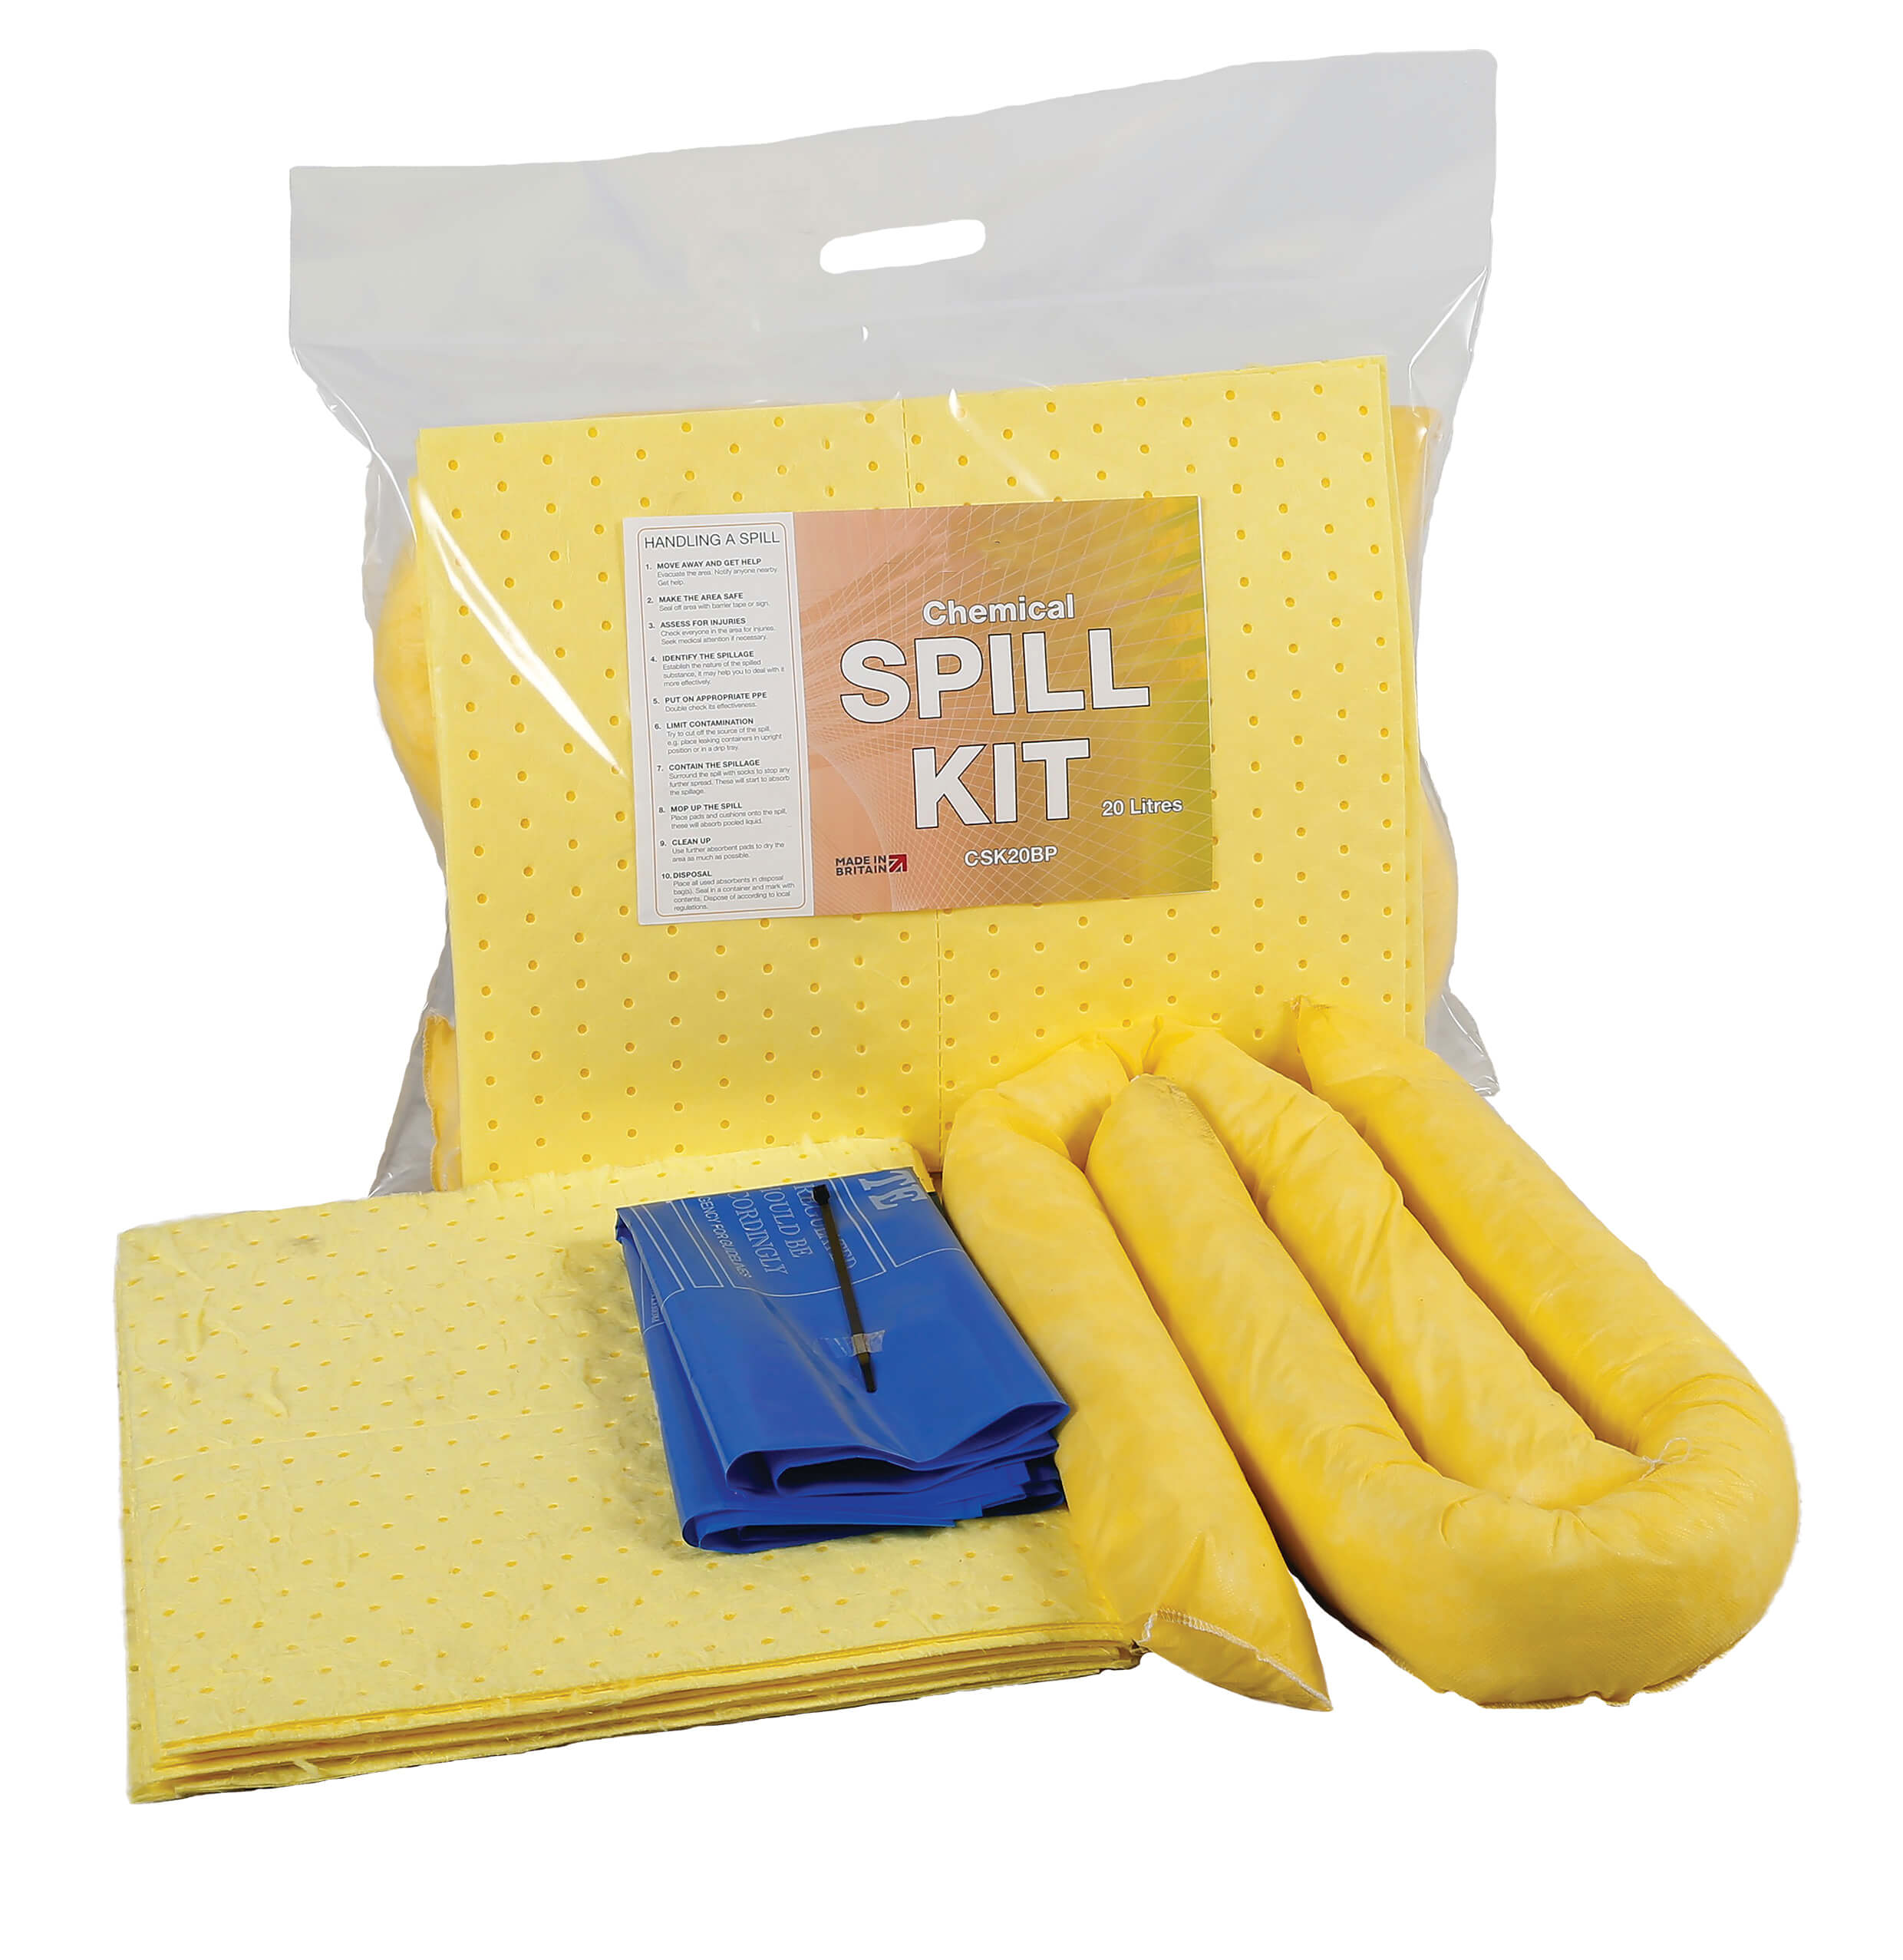 Chemical Spill Kit in sealed Break Pack